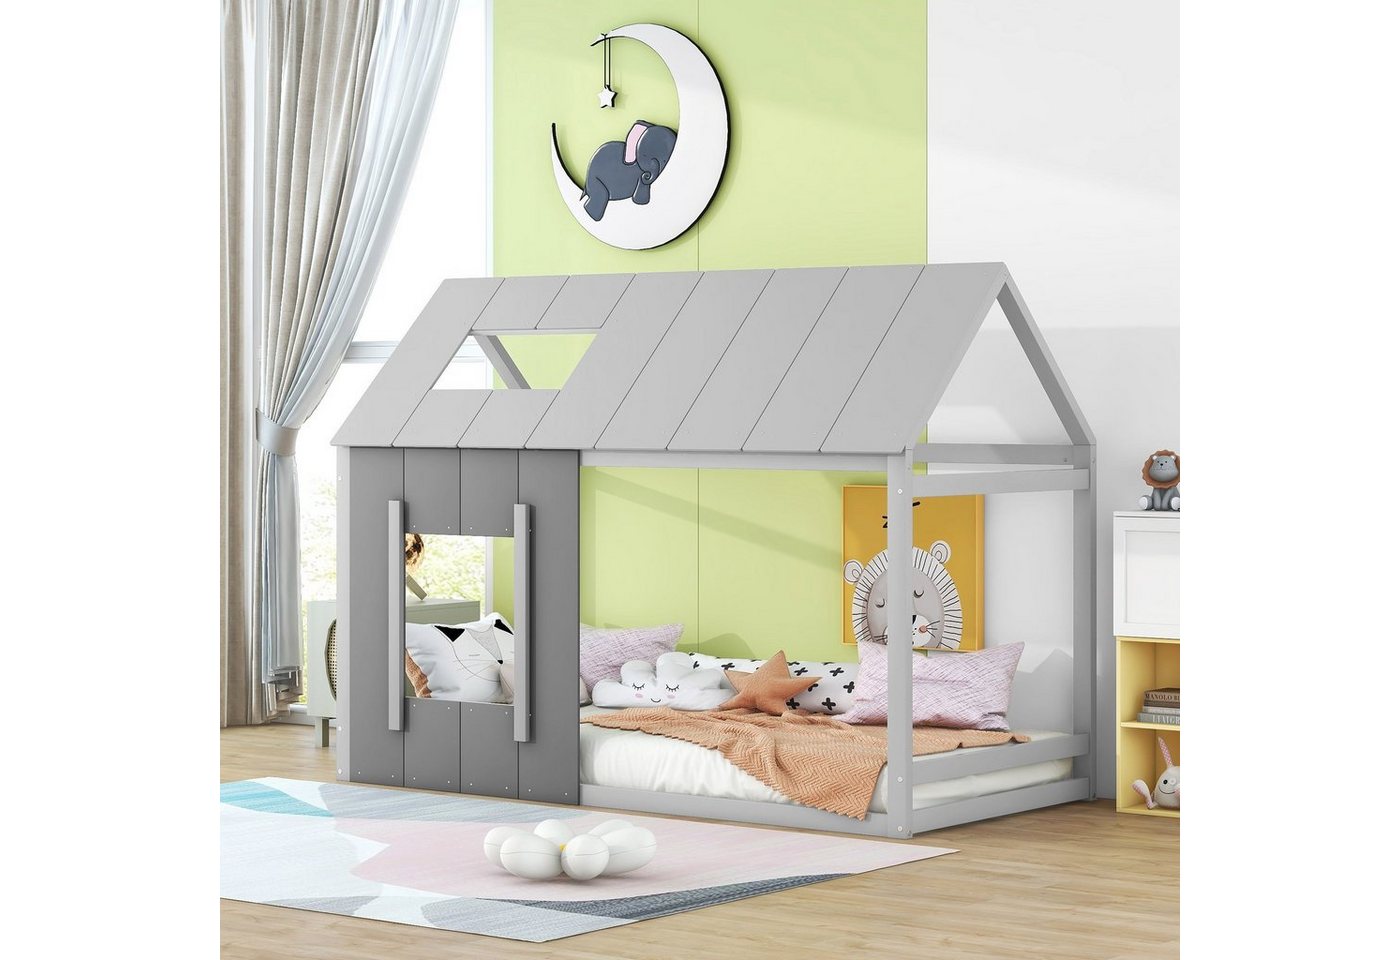 Flieks Kinderbett, Massivholz Einzelbett Hausbett mit Dach und Fenster 90x200cm von Flieks